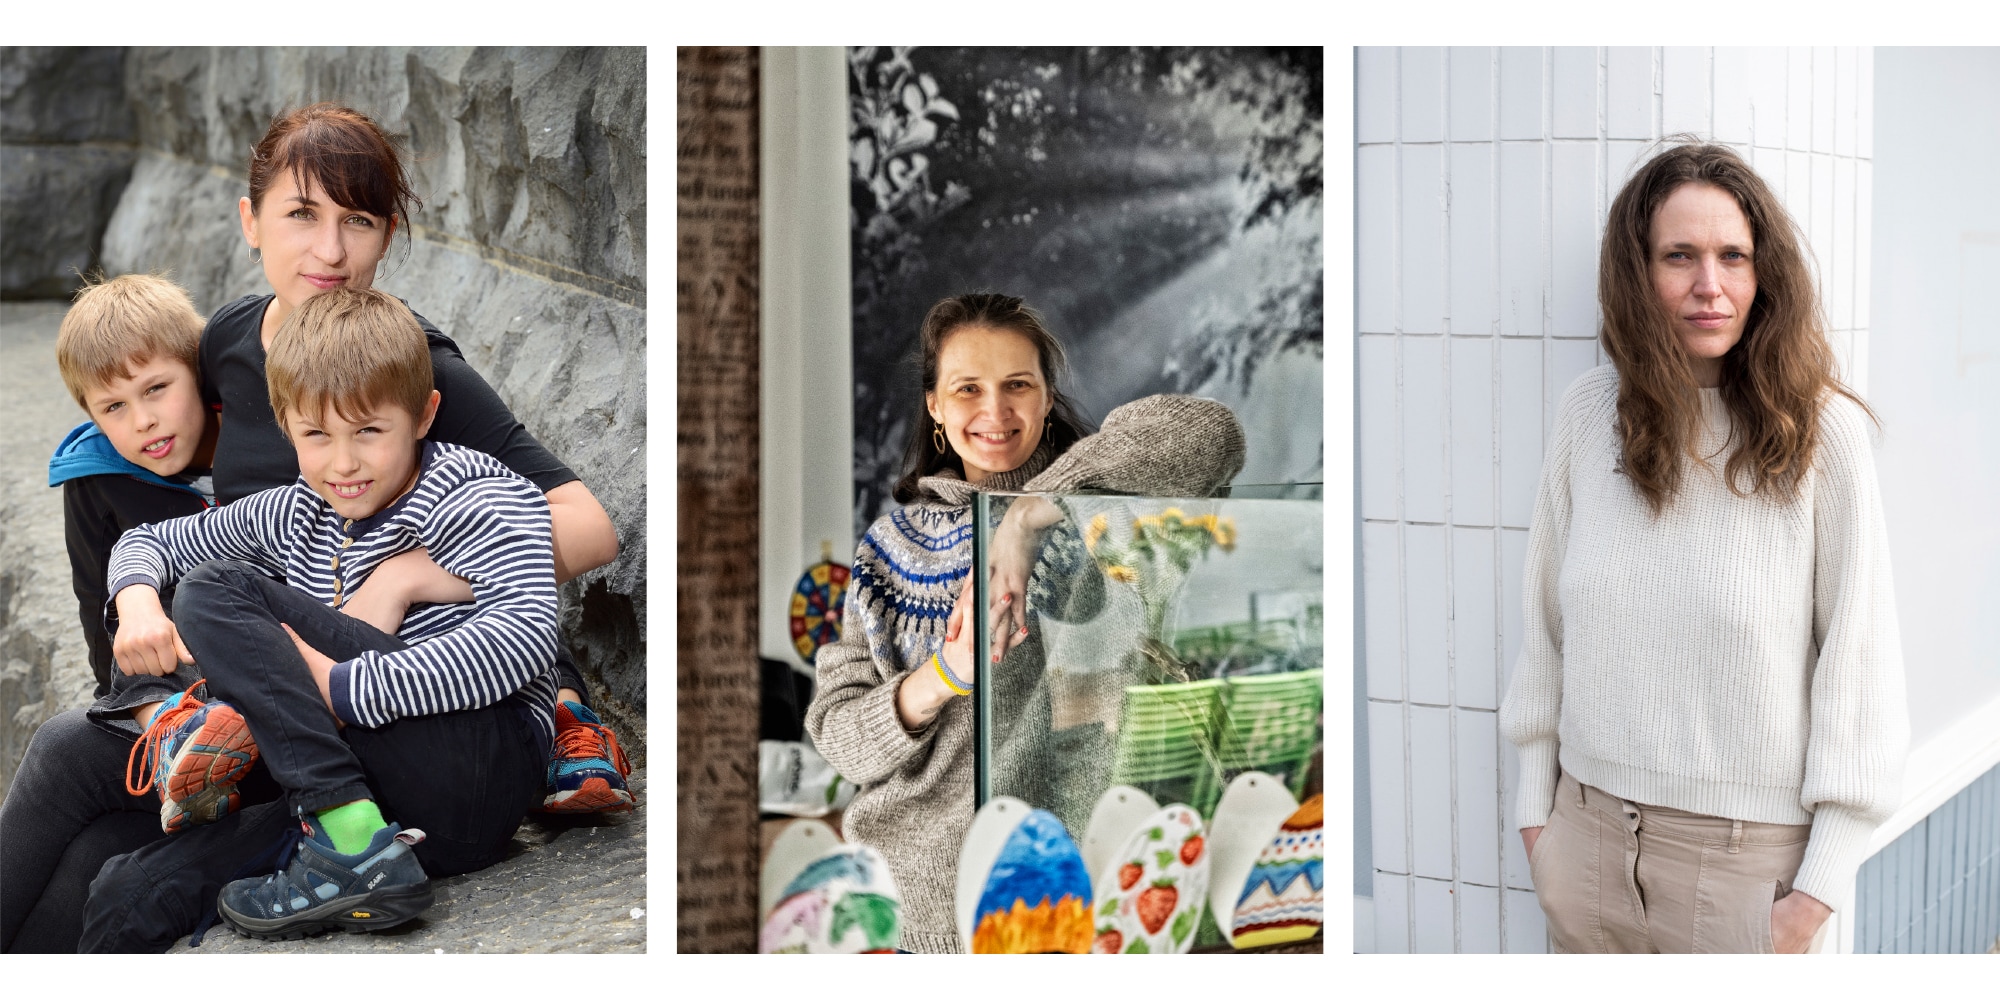 Oekraïense vluchtelingen over hun nieuwe leven: ‘Het moeilijkste blijft de onzekerheid over wat morgen komt’